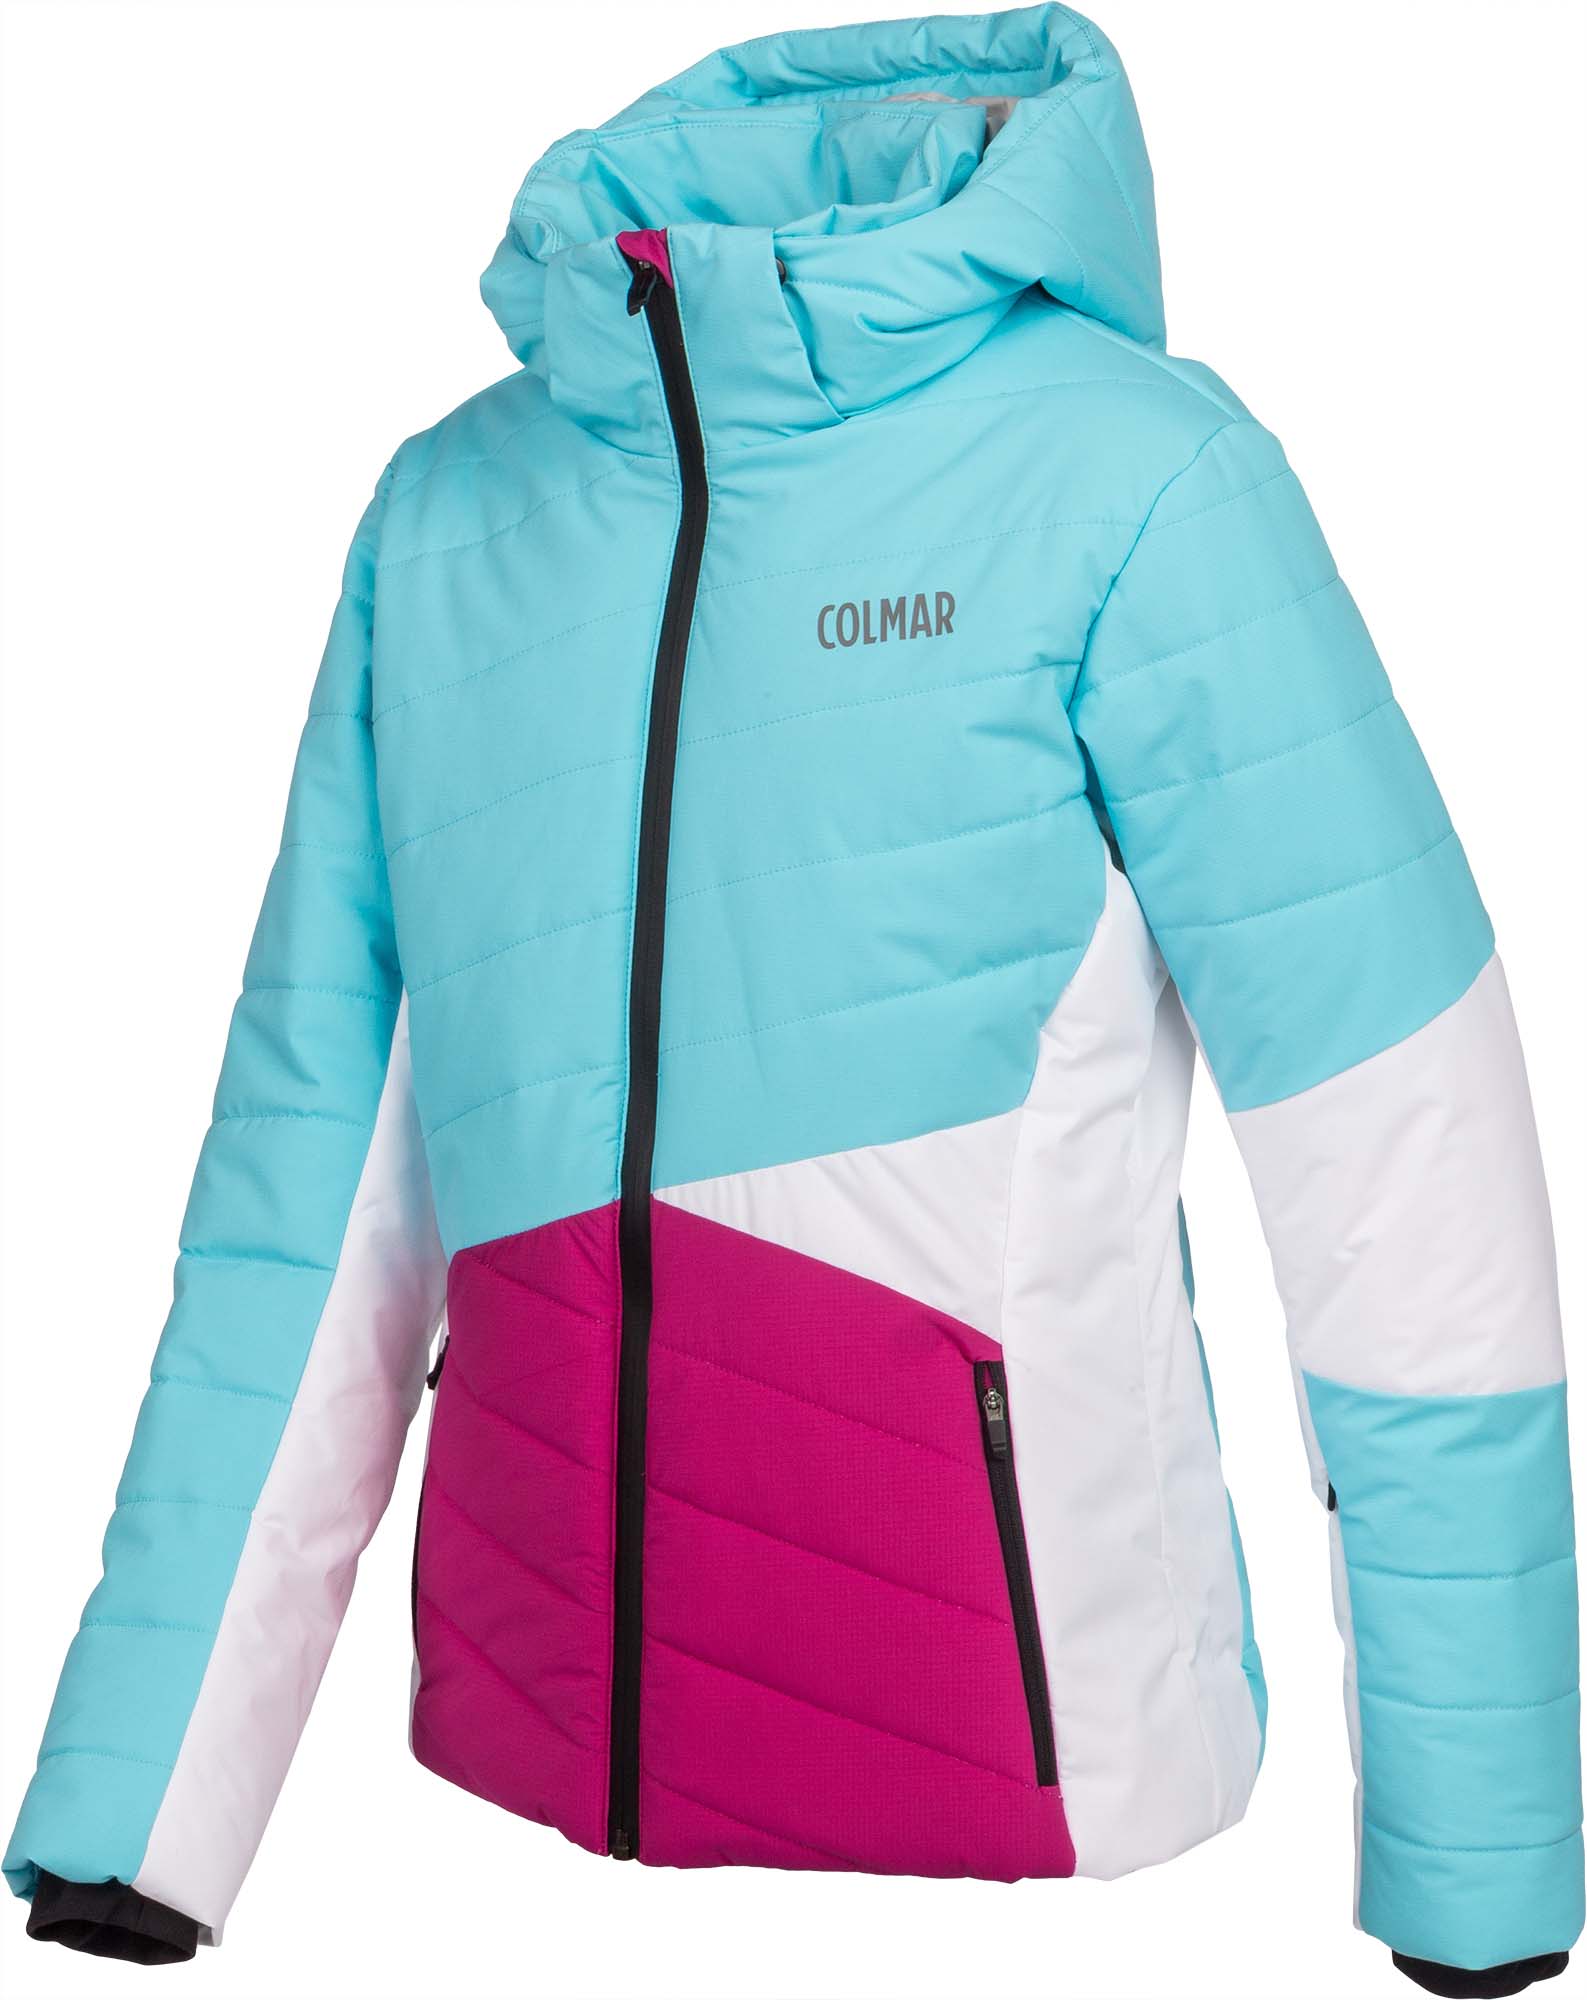 Girls’ ski jacket